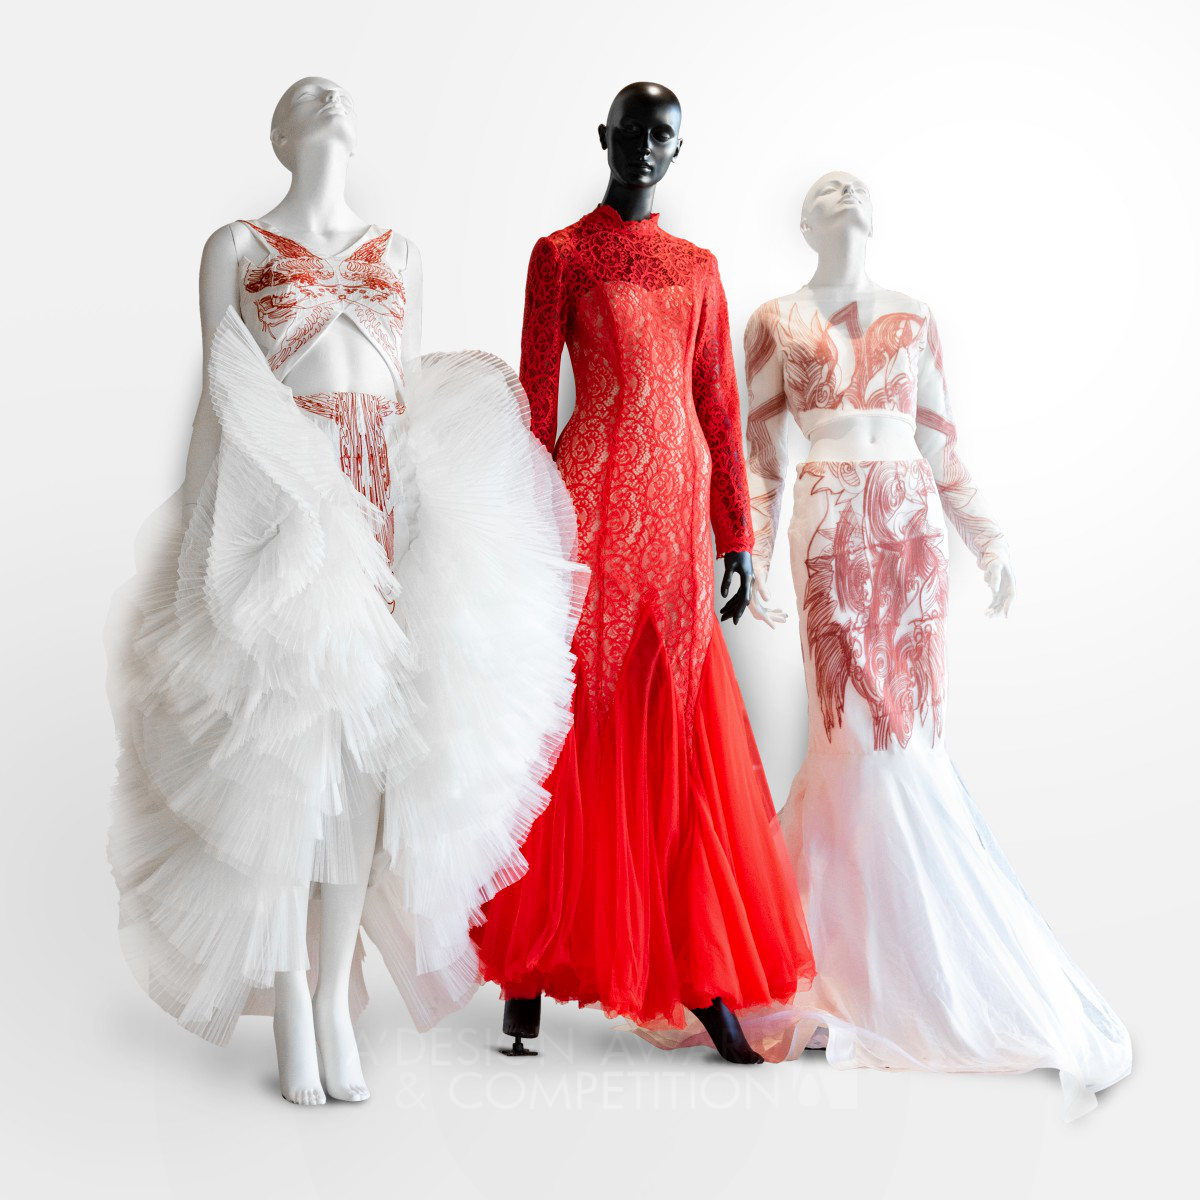 تصميم "إثيريال" للمصممة لينلين ني: تجسيد للقوة الإمبراطورية في أزياء الزفاف الصينية